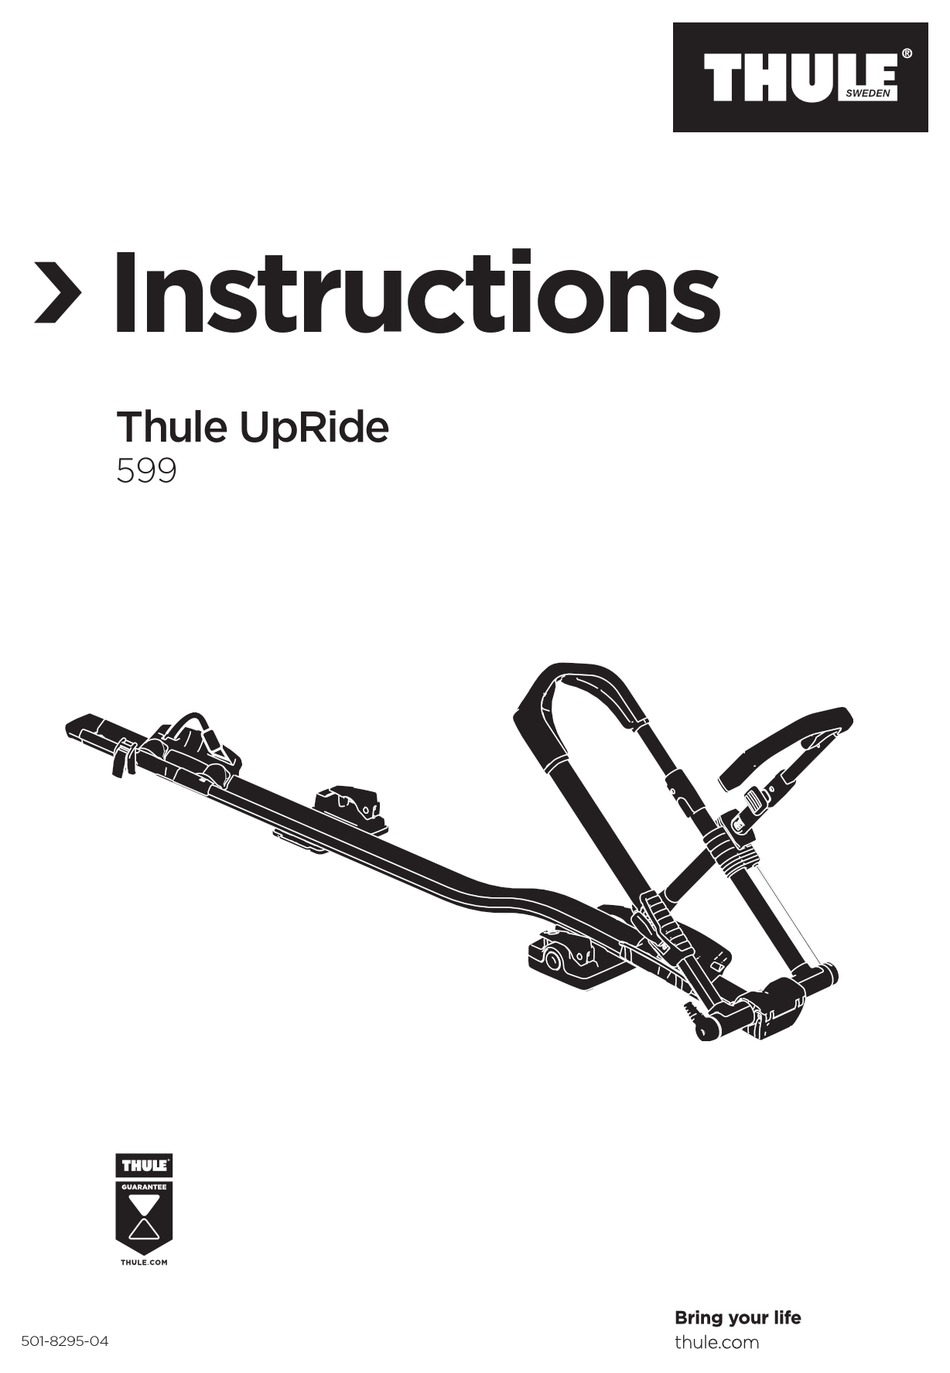 thule 599 upride